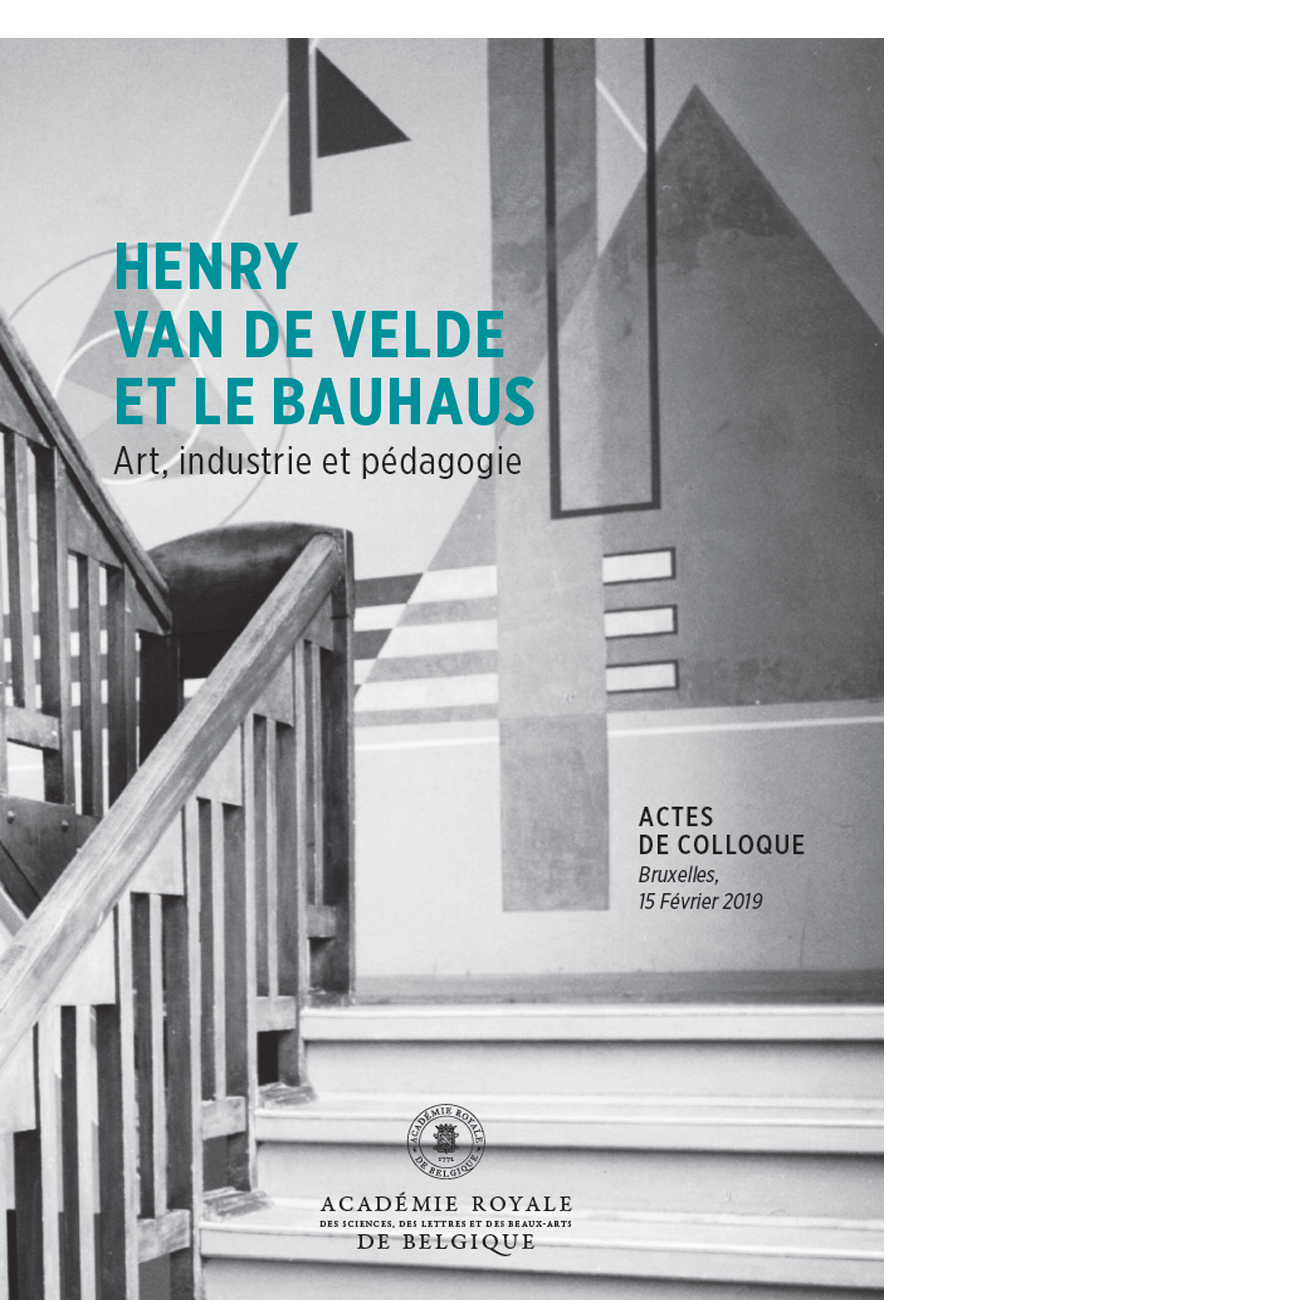 Henry van de Velde et le Bauhaus